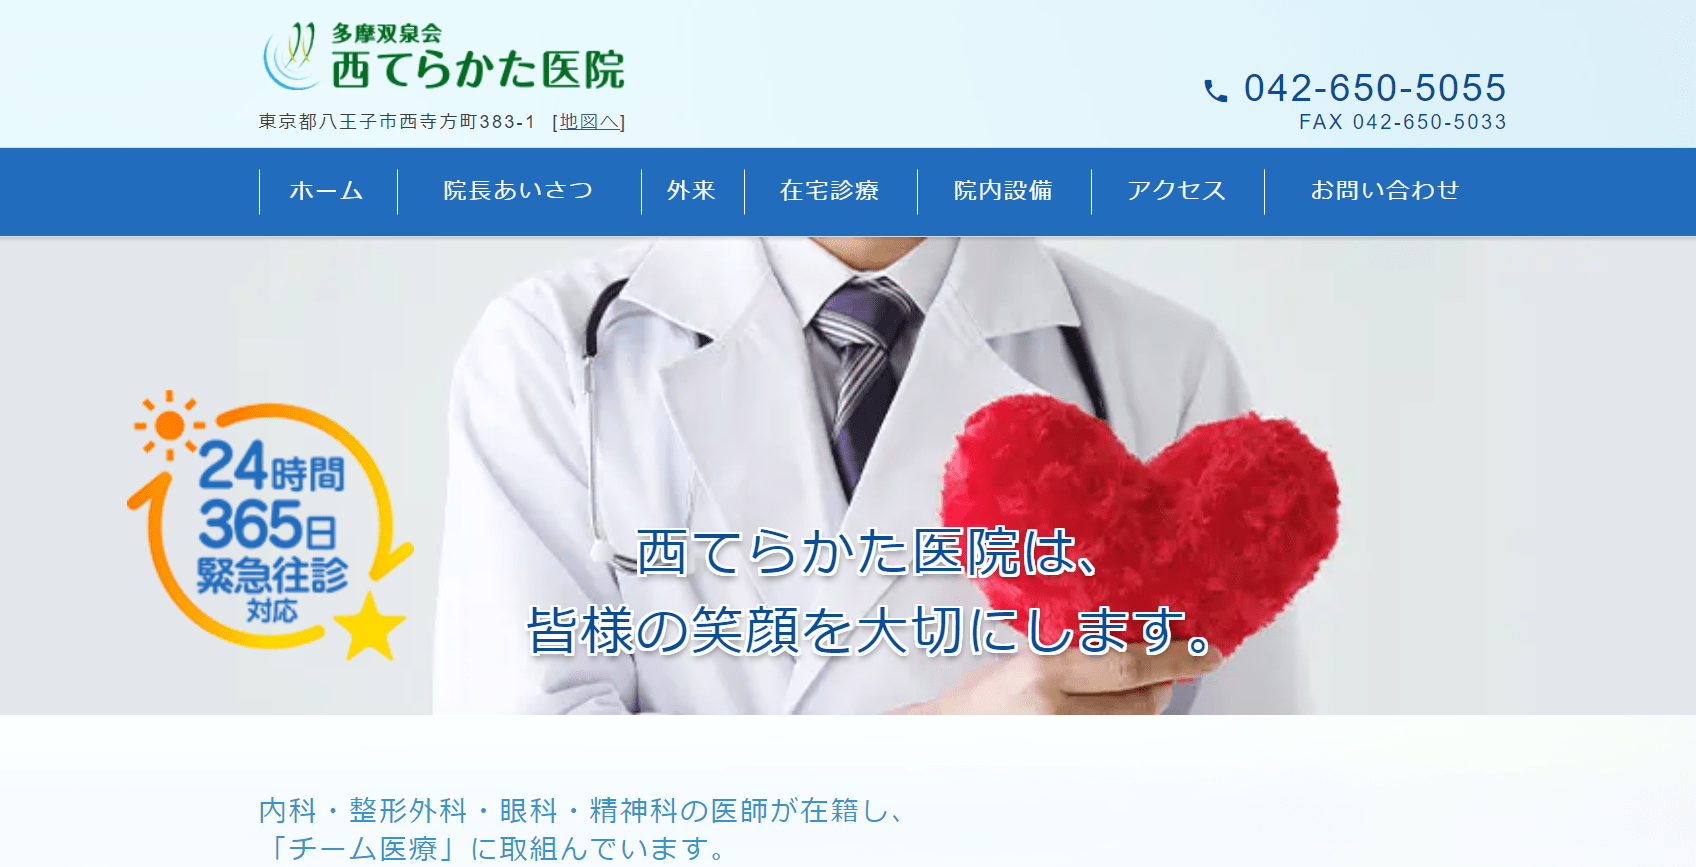 東京都で評判の訪問診療におすすめのクリニック10選 西てらかた医院